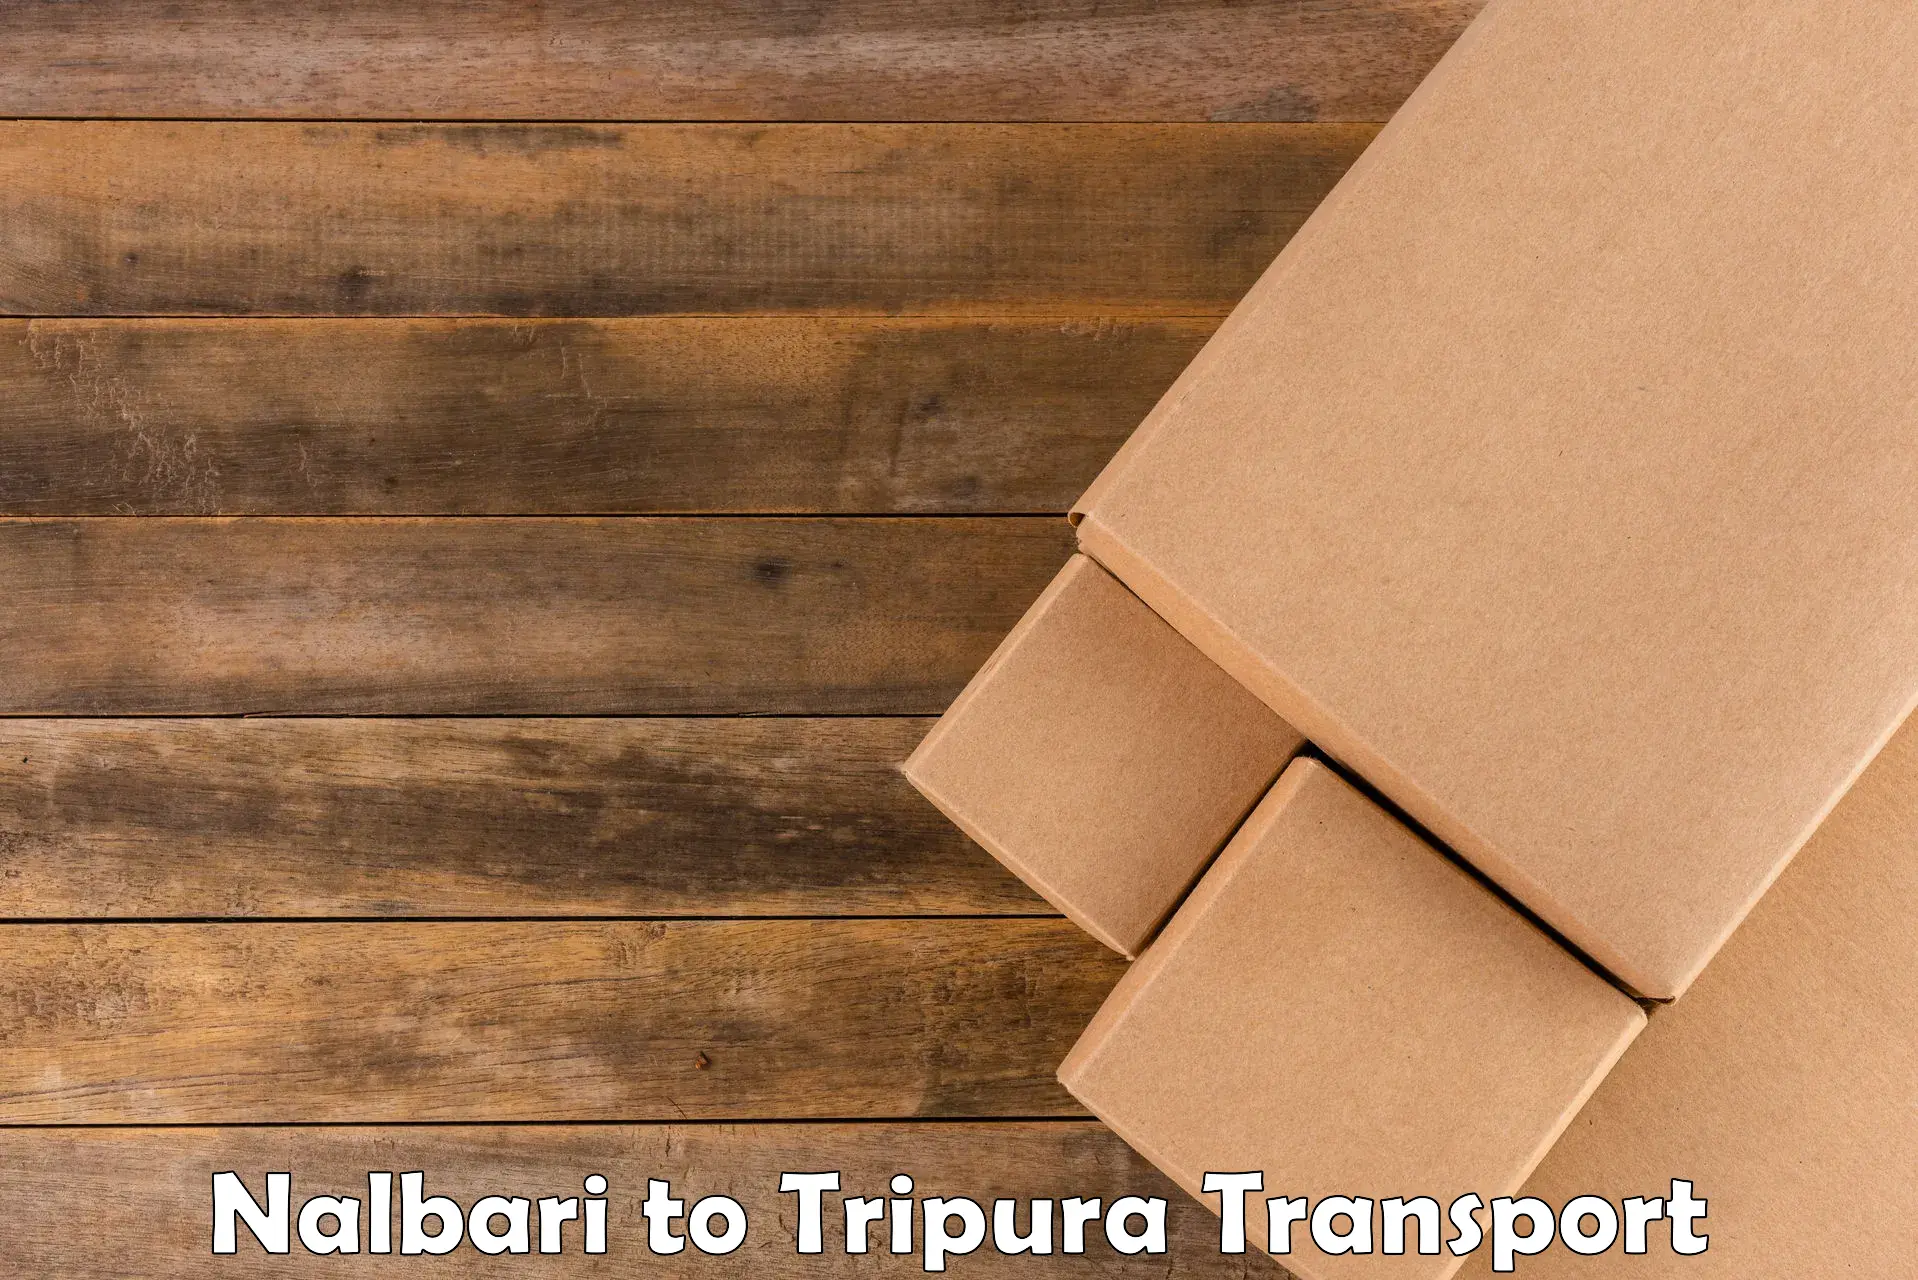 Truck transport companies in India Nalbari to Sonamura